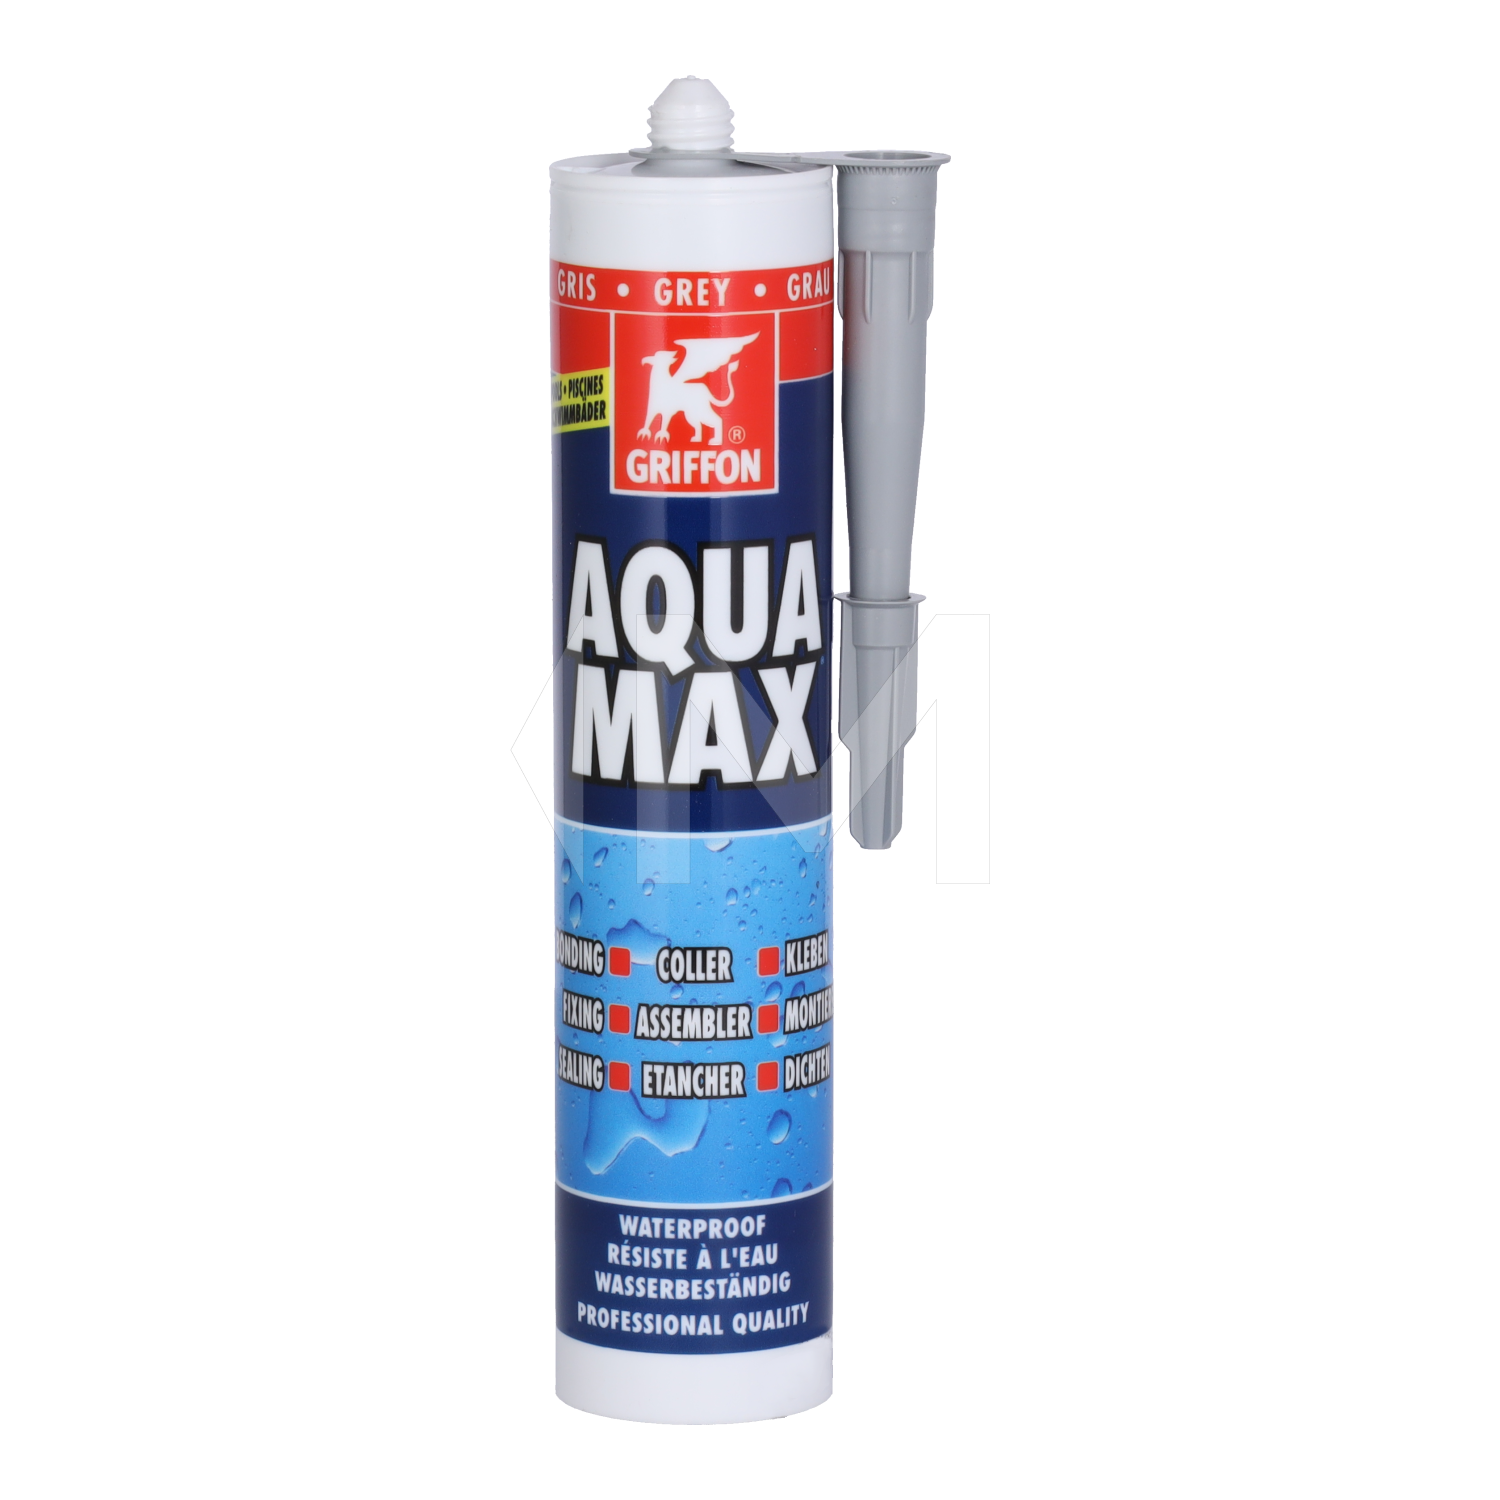 Aqua Max Griffon